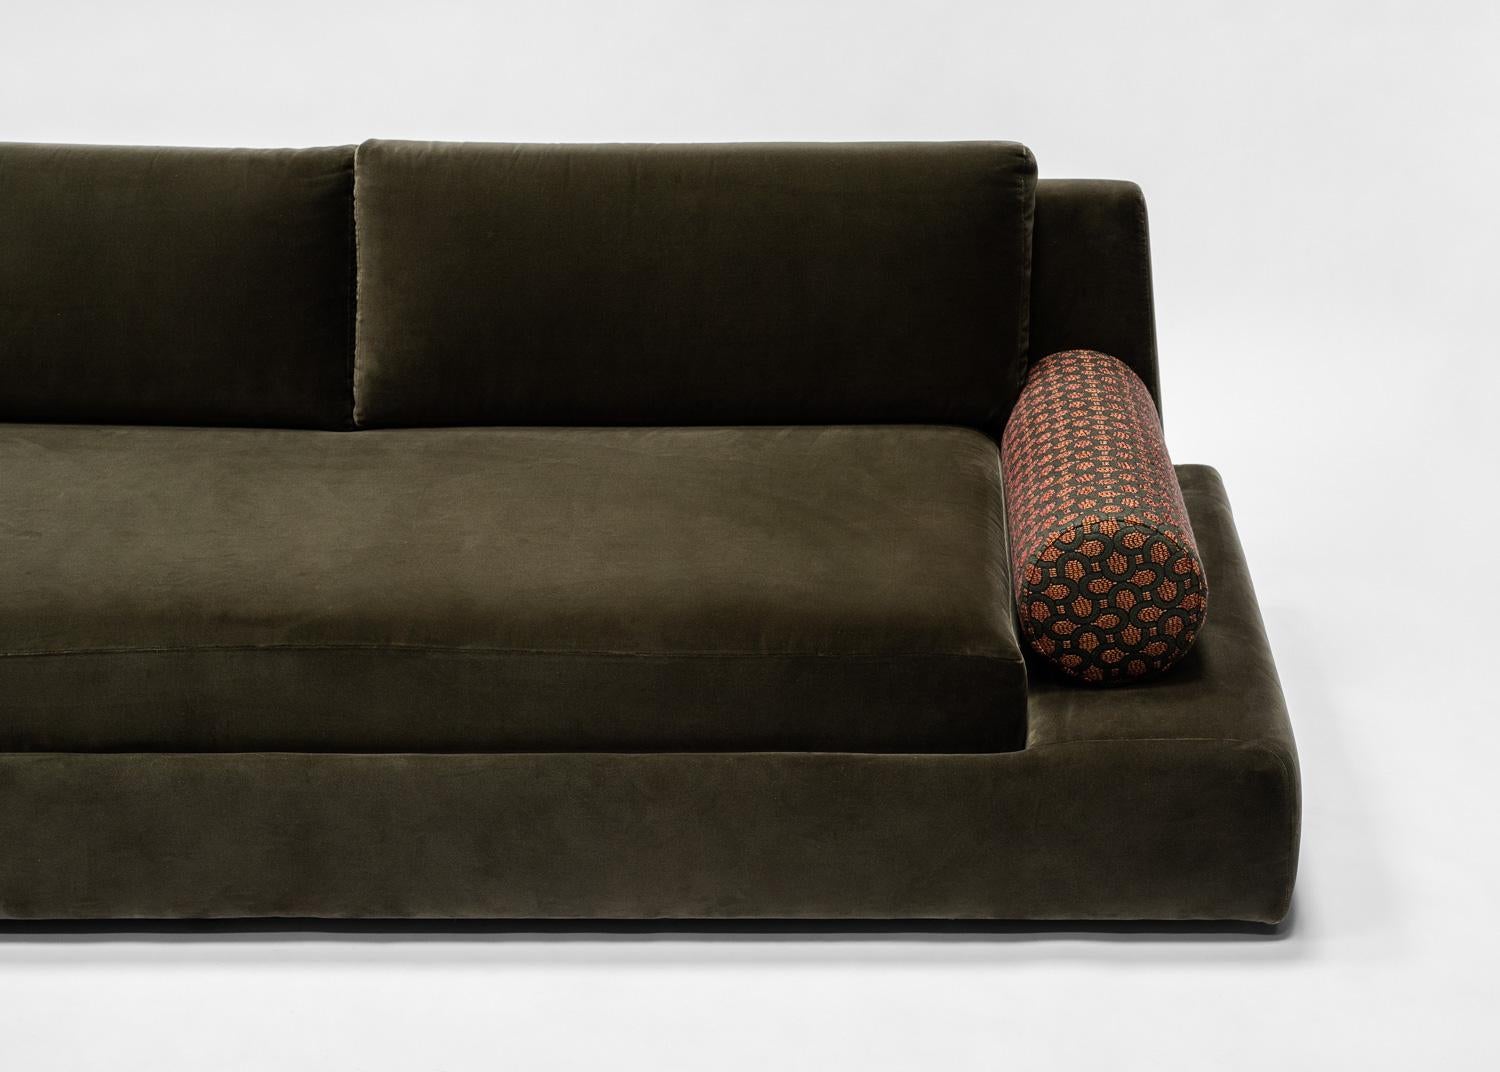 Das Podium Sofa von HAUVETTE MADANI.  Das in Italien handgefertigte Podium Sofa ist in COM erhältlich und wird auf Bestellung gefertigt.  HAUVETTE MADANI ist ein Designstudio, das von Samantha Hauvette und Lucas Madani gegründet wurde, die seit 2010